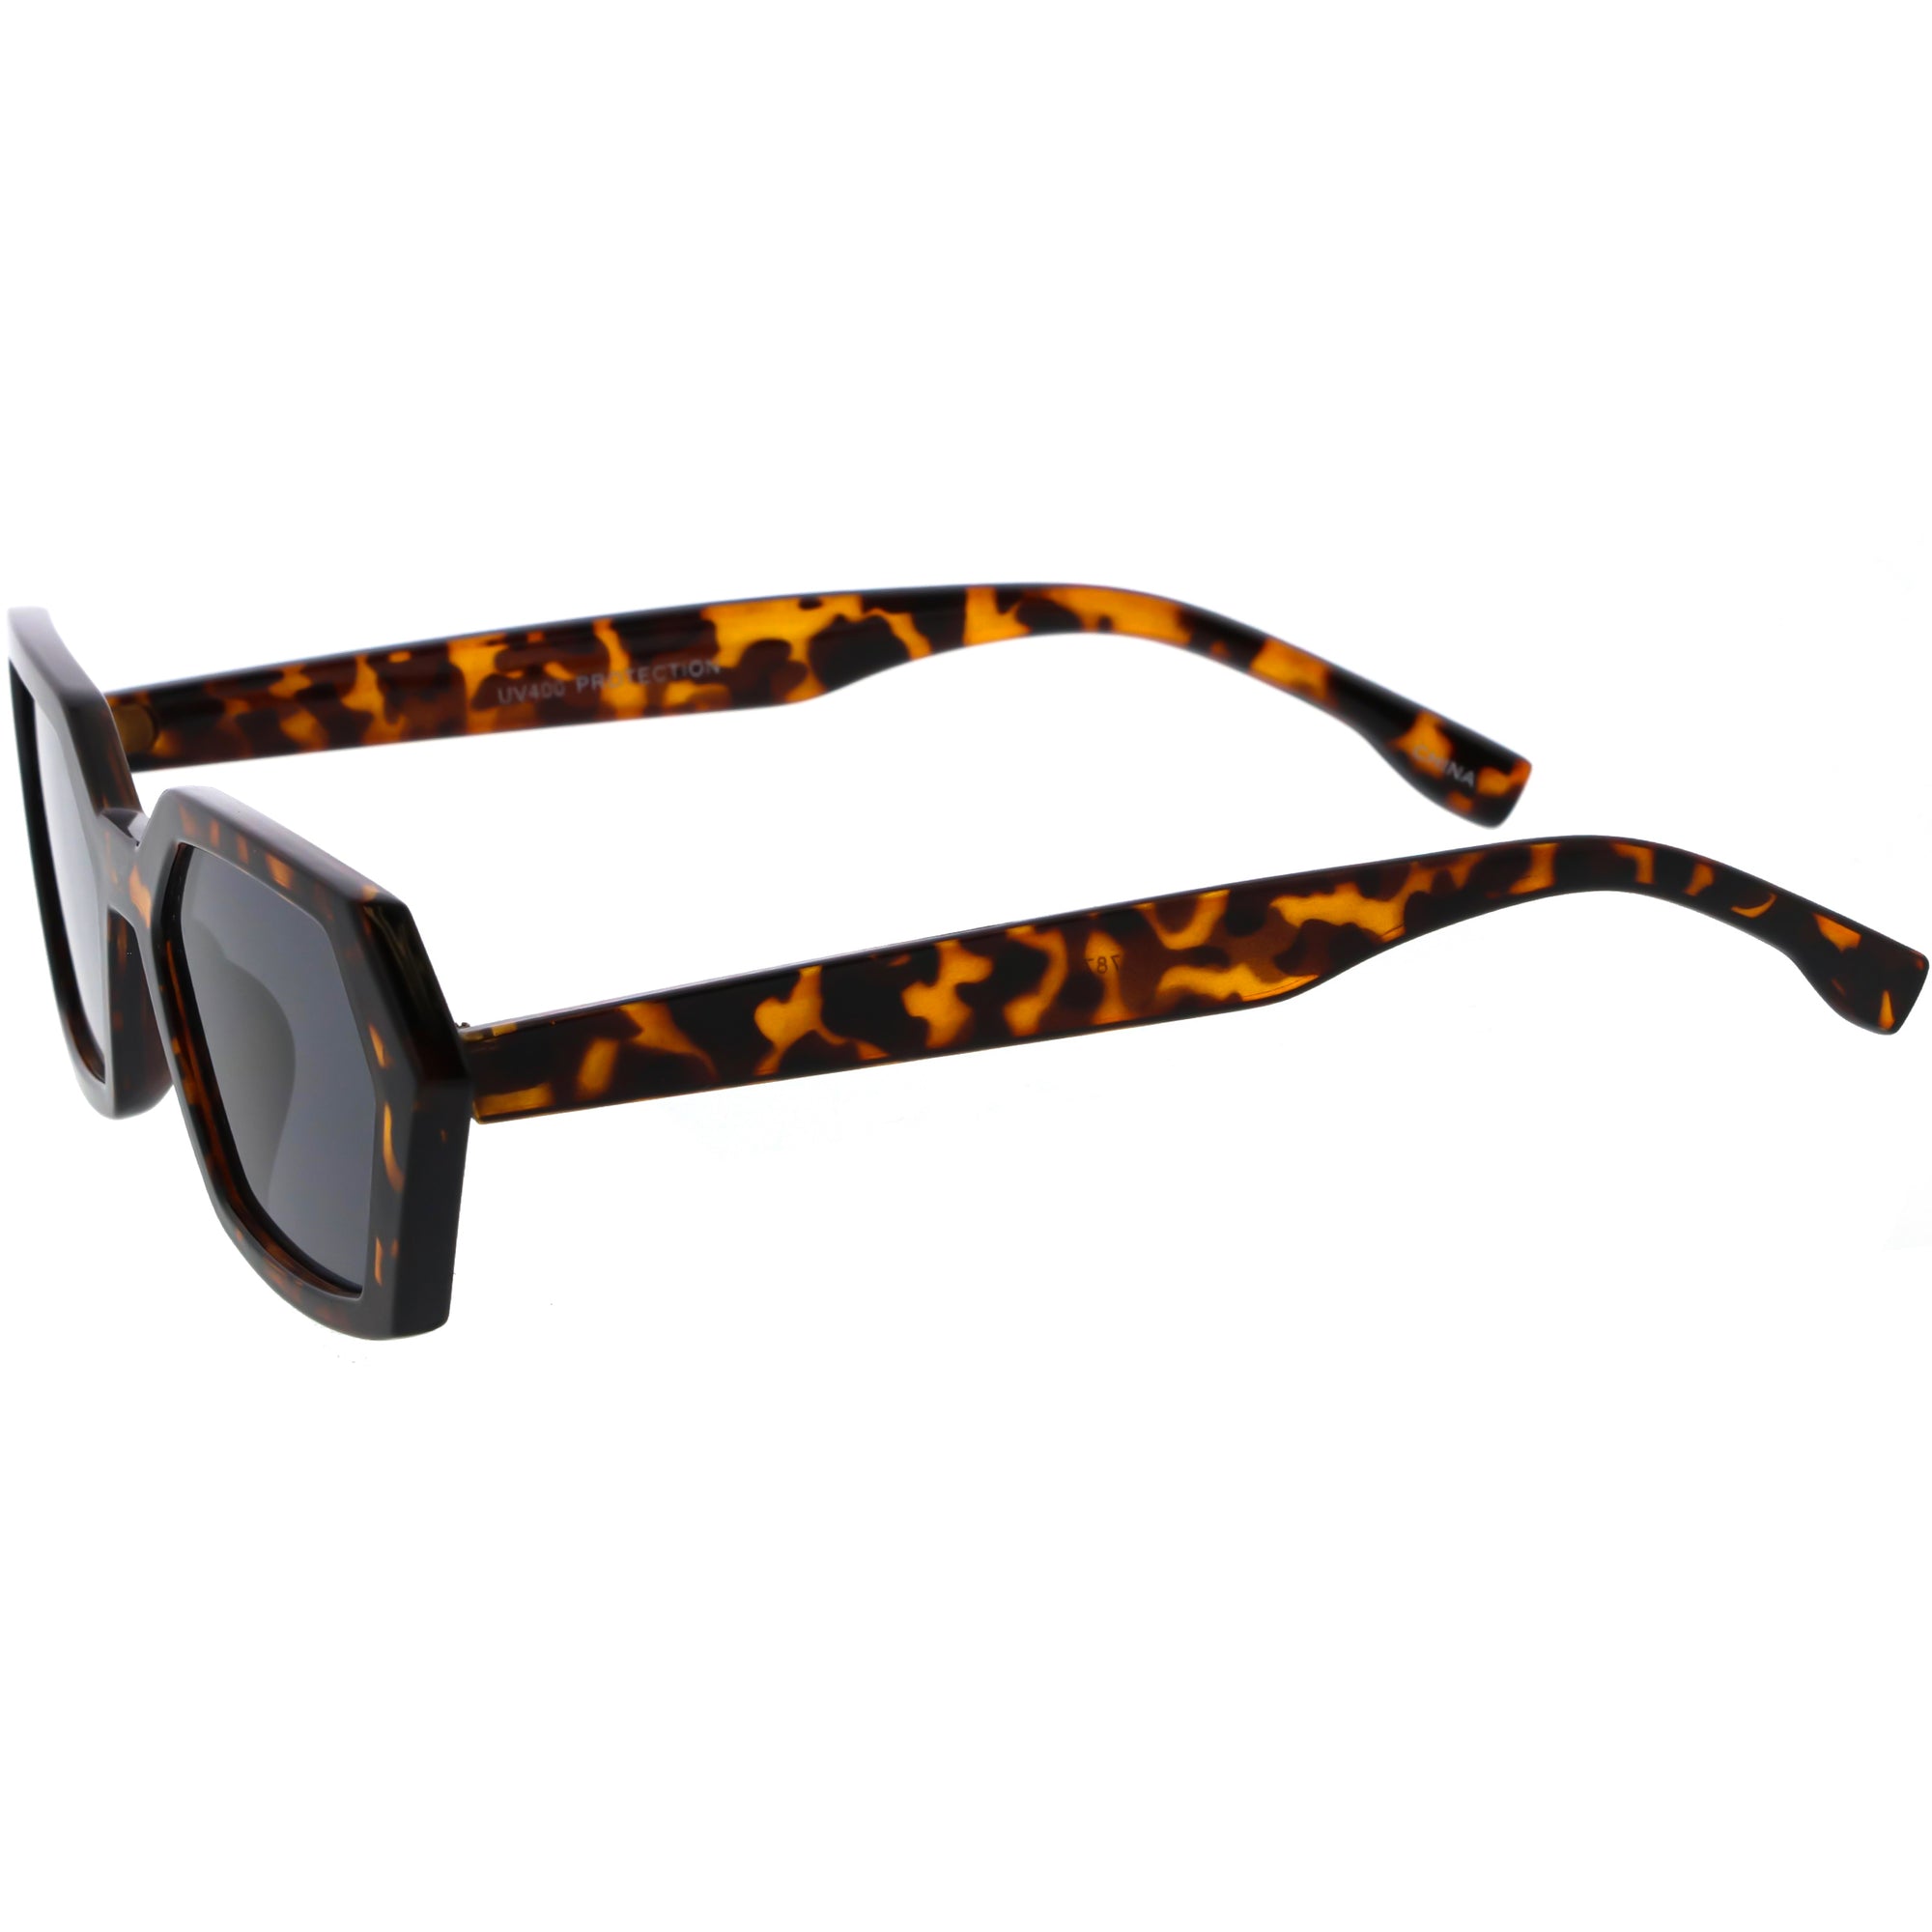 Retro Fashion Neutral Colored Geometric Sunglasses D120 - zeroUV